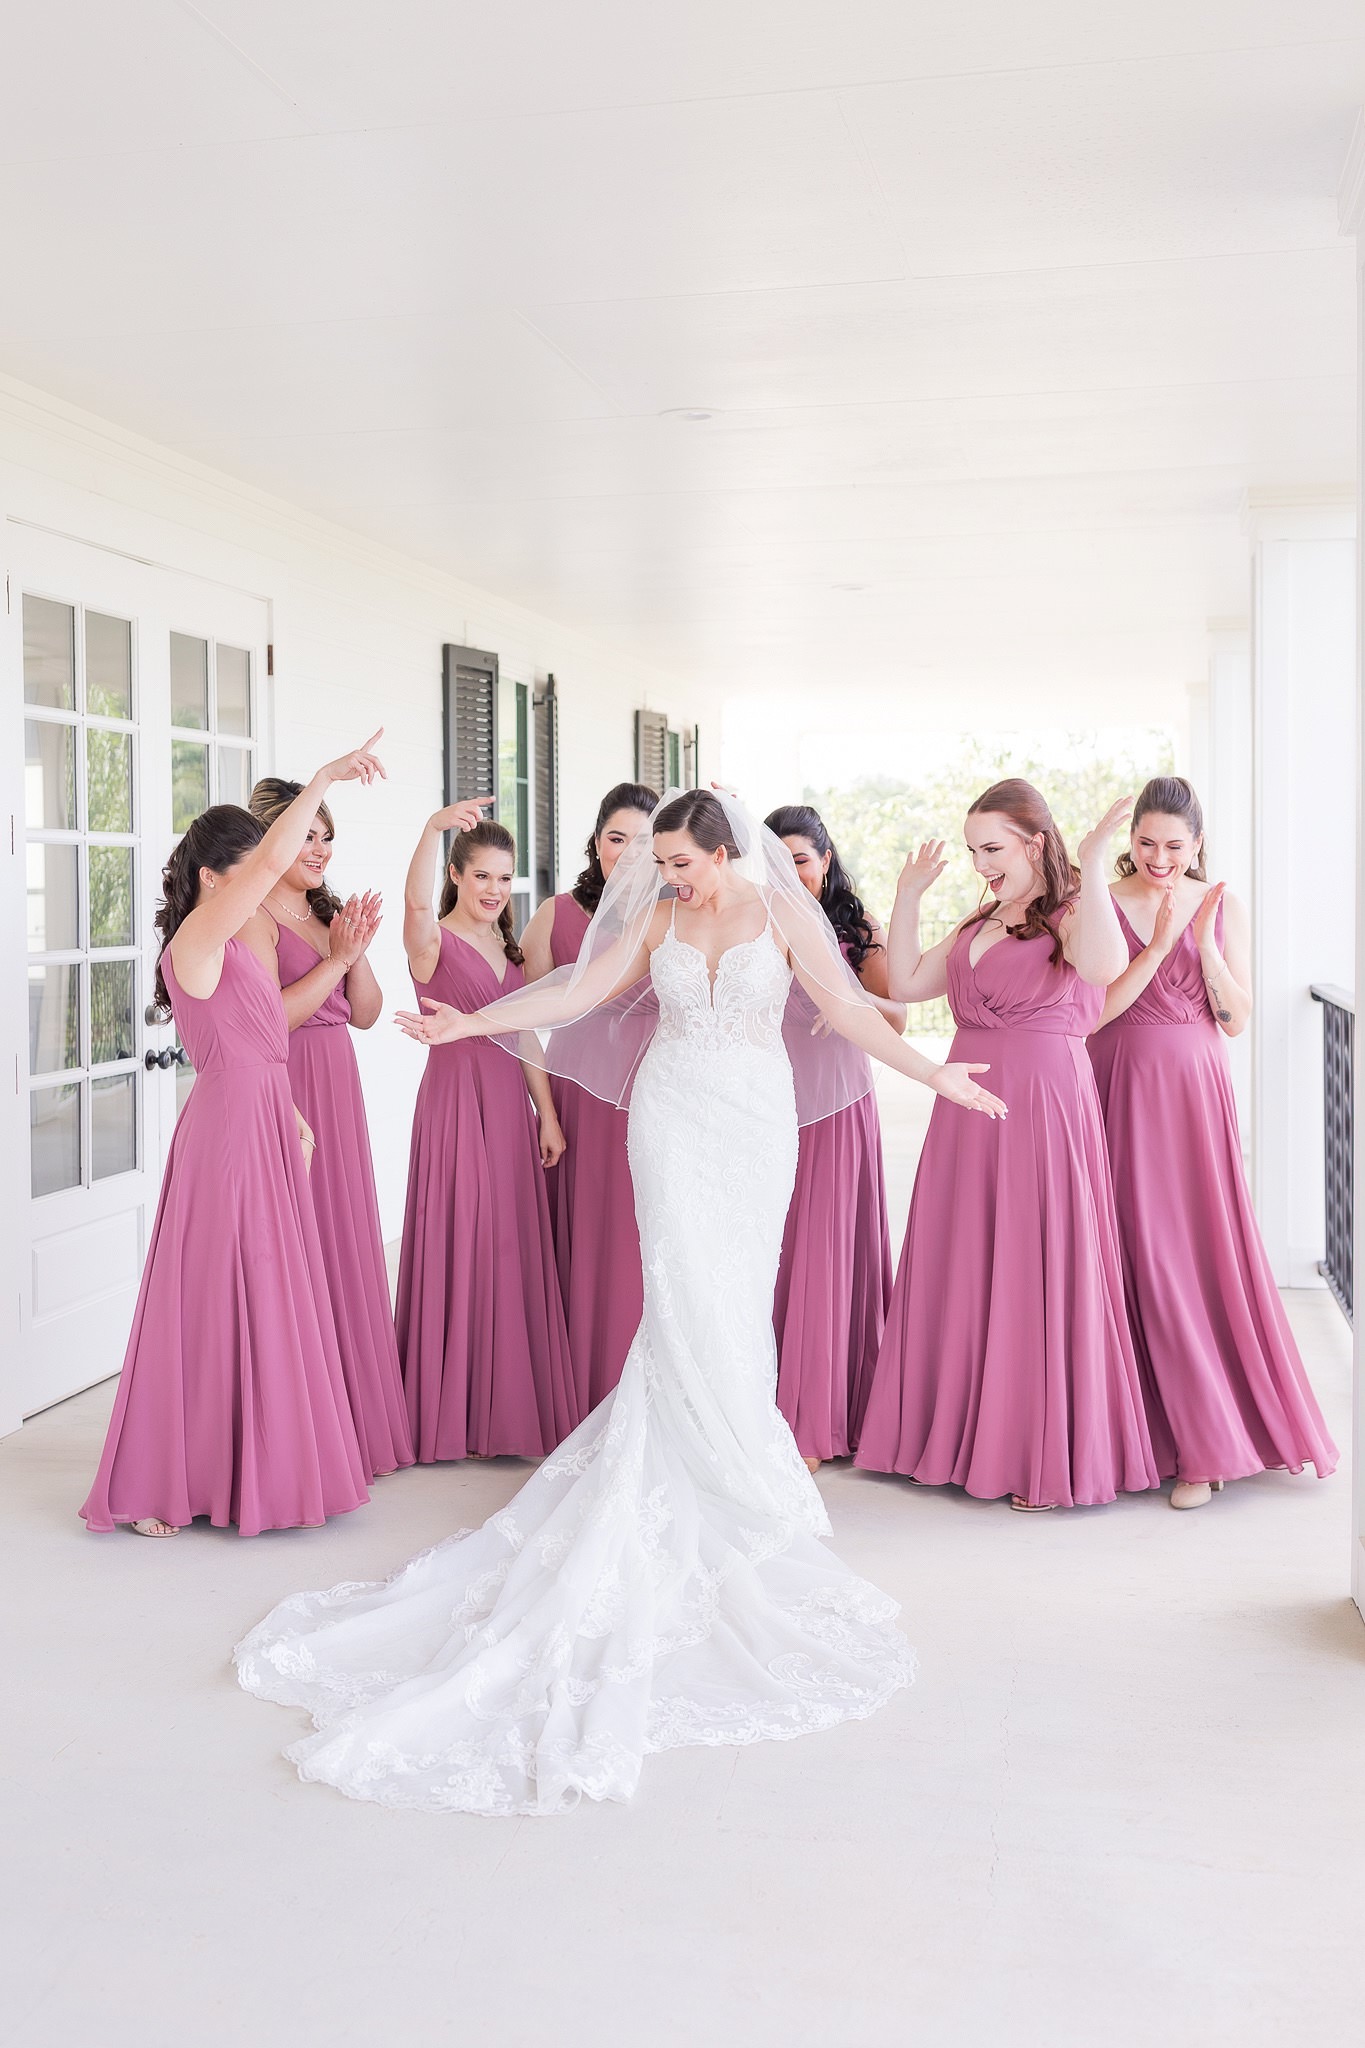 A Dusty Rose & Blush Wedding at Kendall Point by Dawn Elizabeth Studios, San Antonio Wedding Photographer